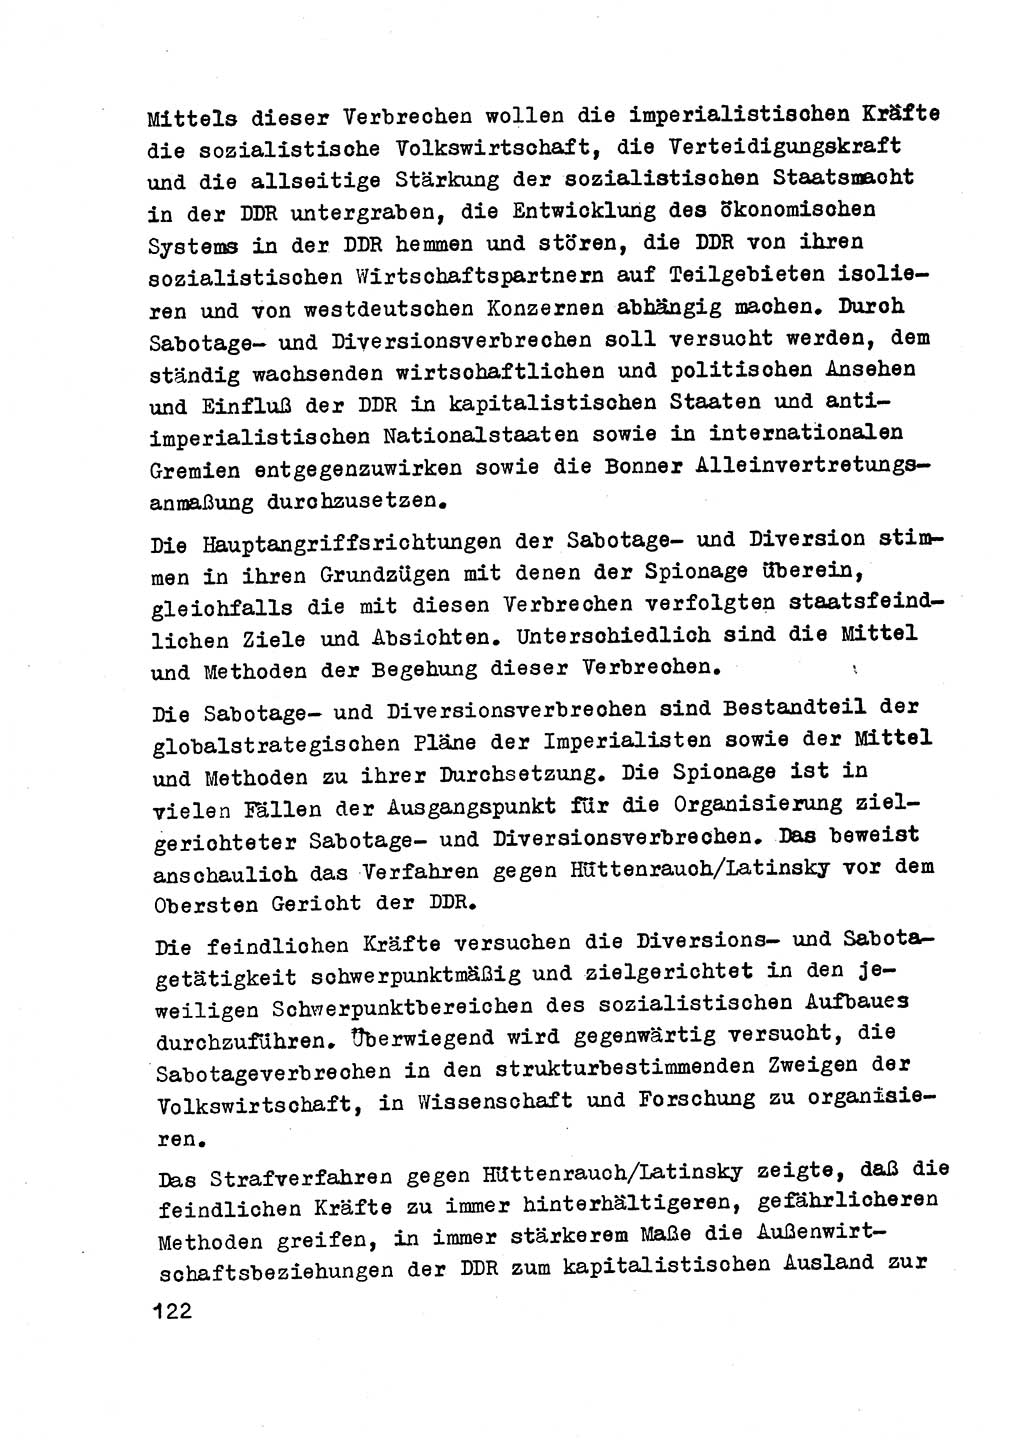 Strafrecht der DDR (Deutsche Demokratische Republik), Besonderer Teil, Lehrmaterial, Heft 2 1969, Seite 122 (Strafr. DDR BT Lehrmat. H. 2 1969, S. 122)